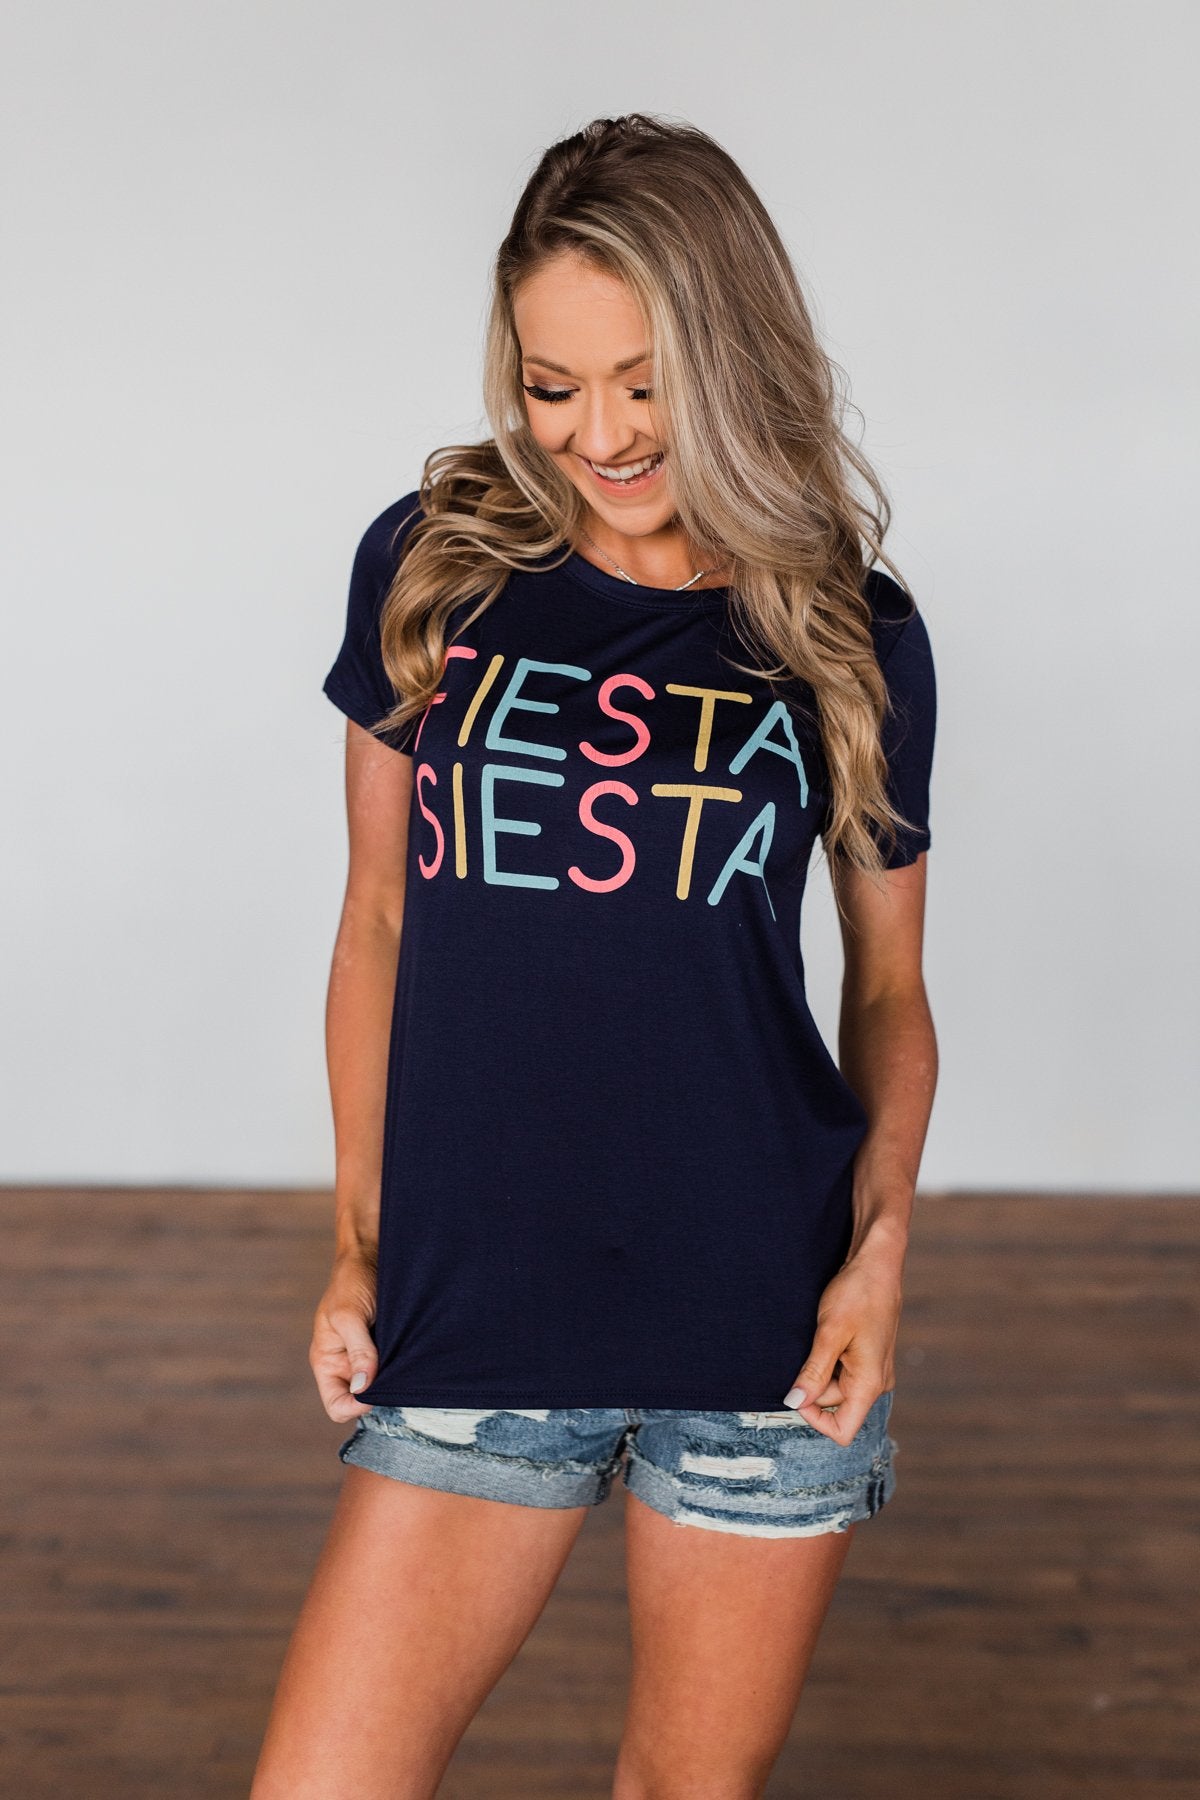 "Fiesta Siesta" Graphic Top- Navy